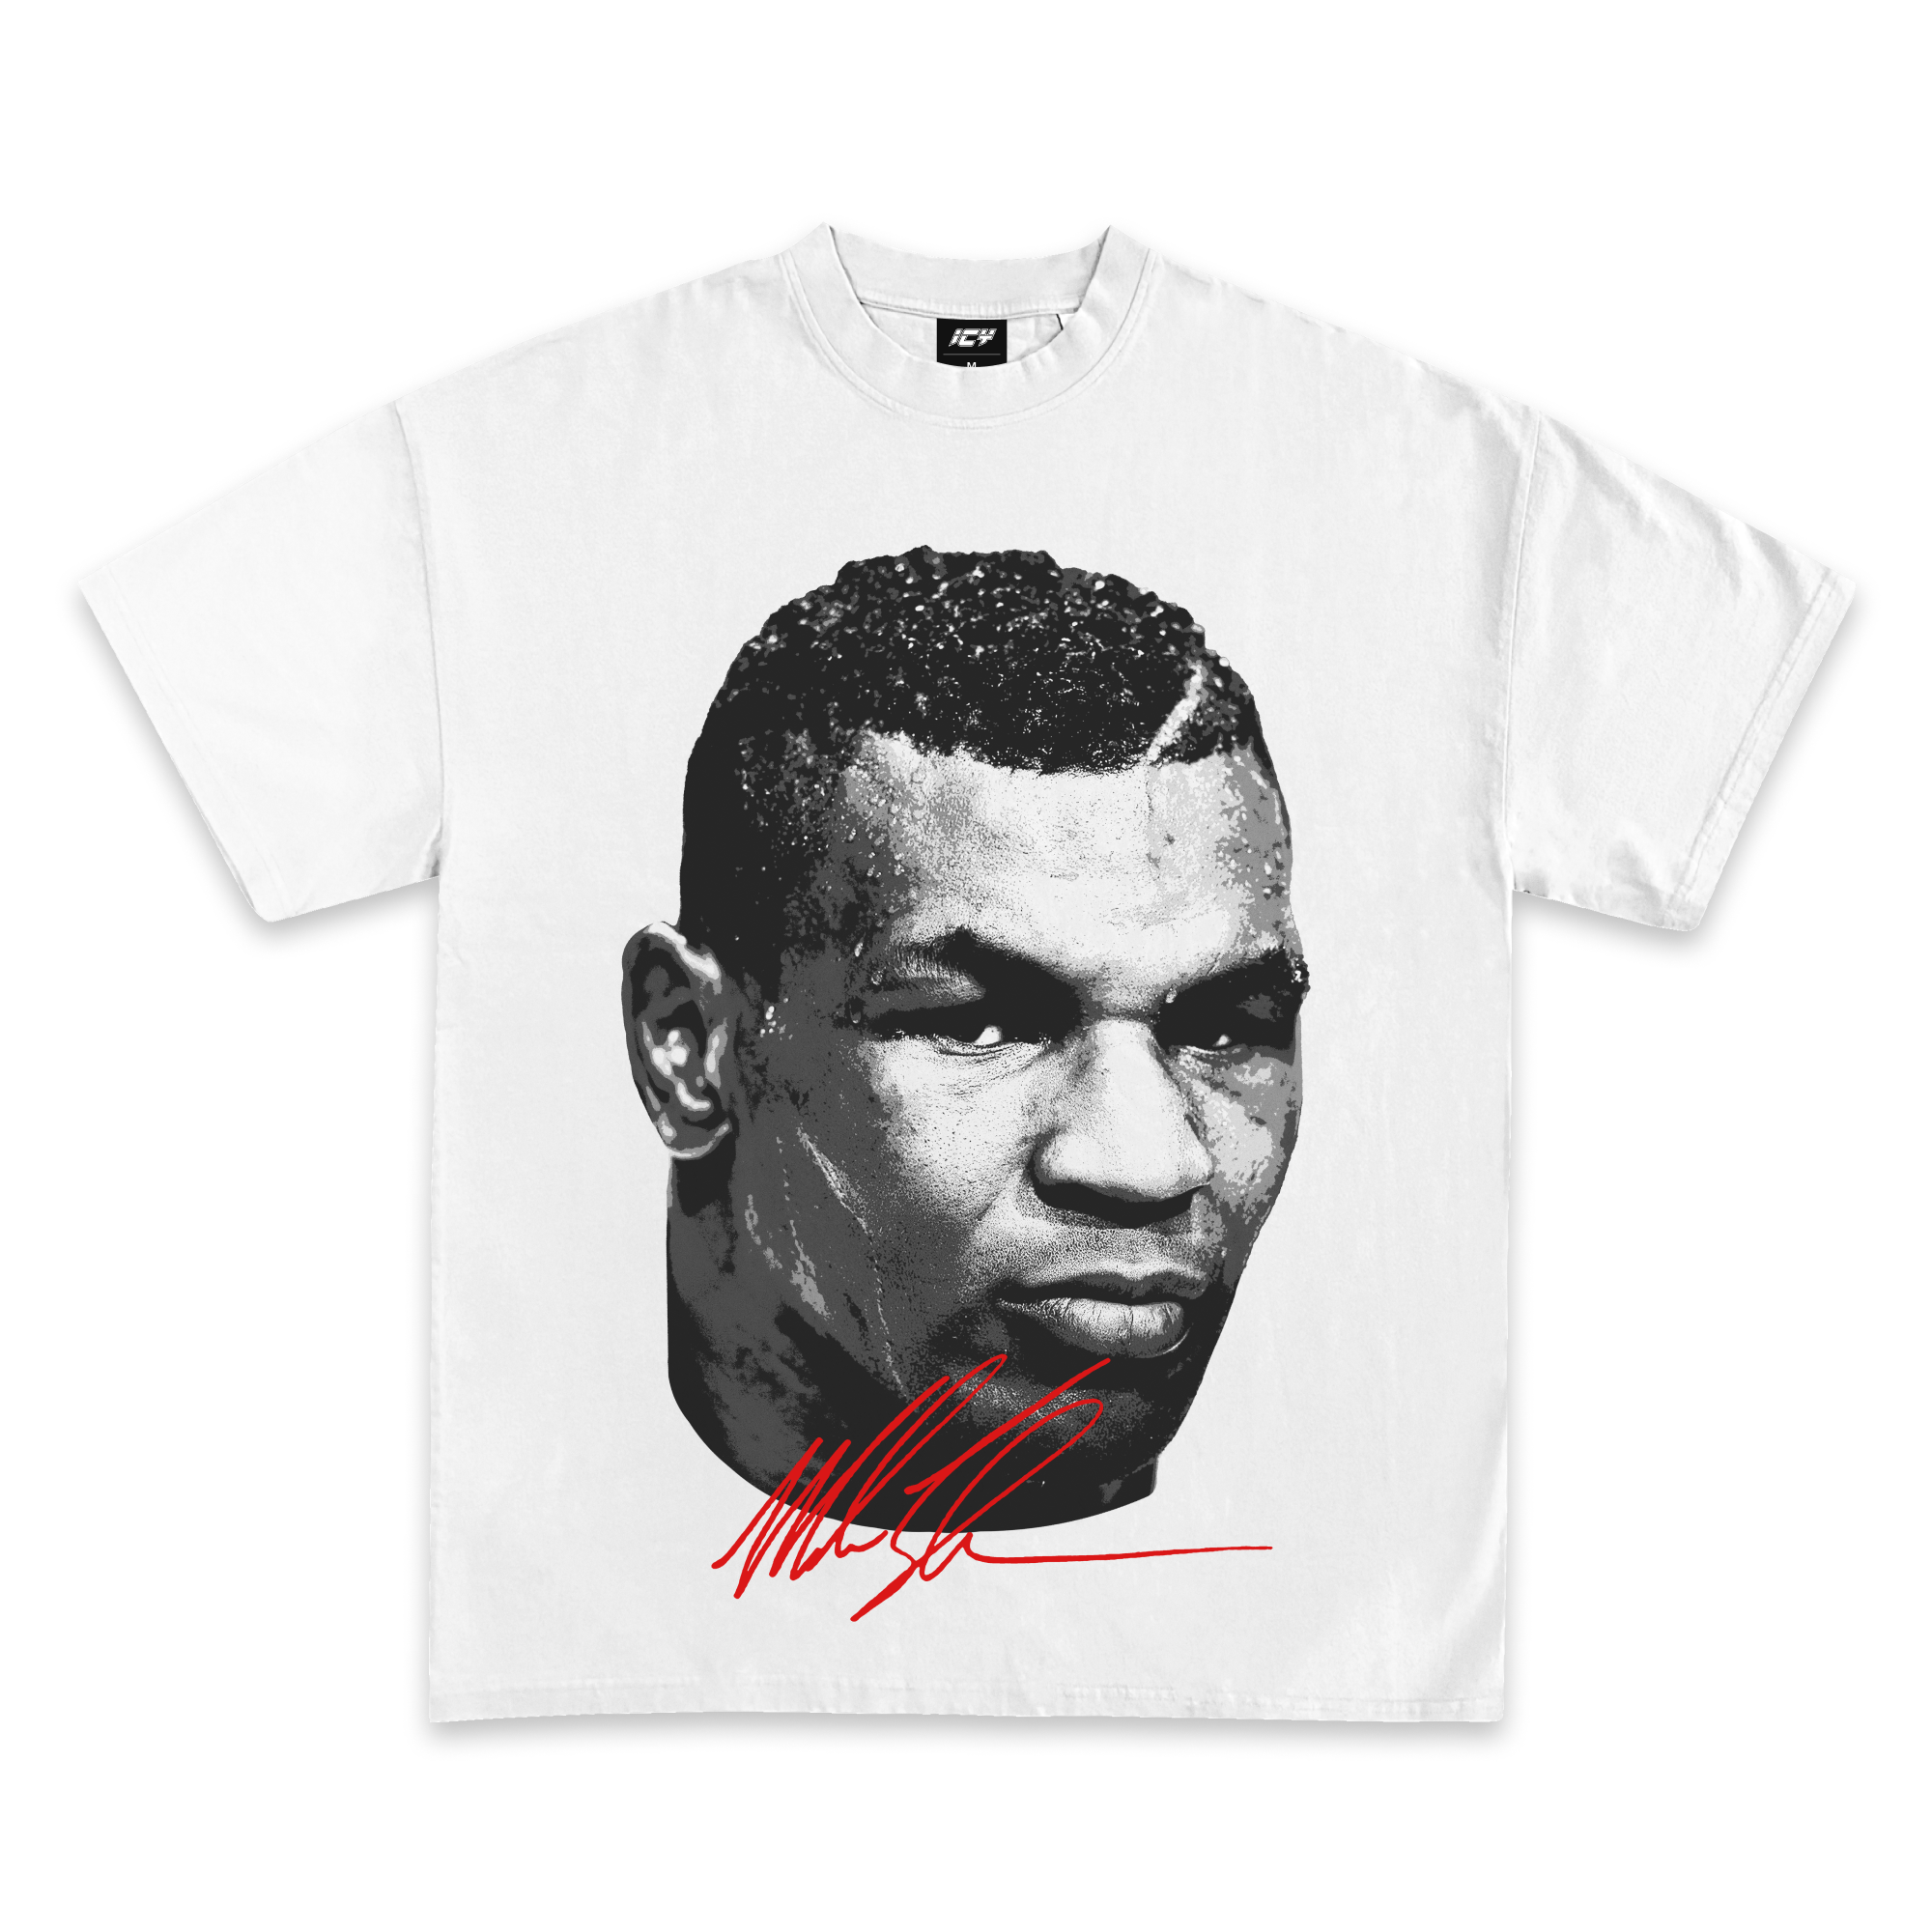 Mike Tyson Jumbo Graphic T-Shirt